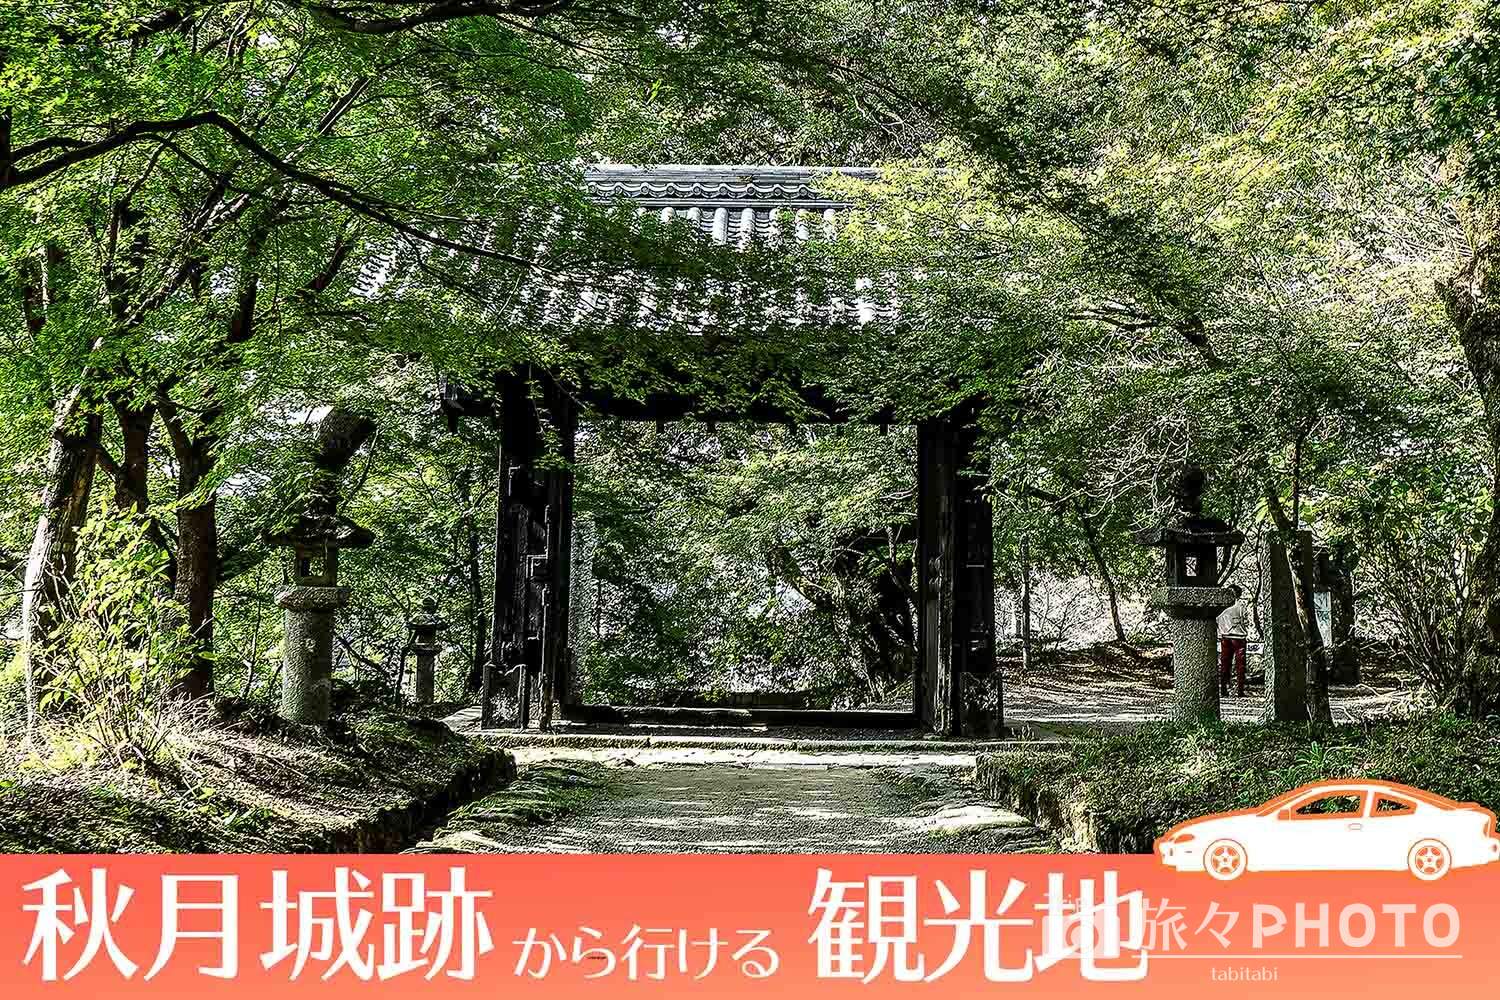 福岡 桜と紅葉の名所 秋月城跡 から行ける観光地を厳選 旅々photo